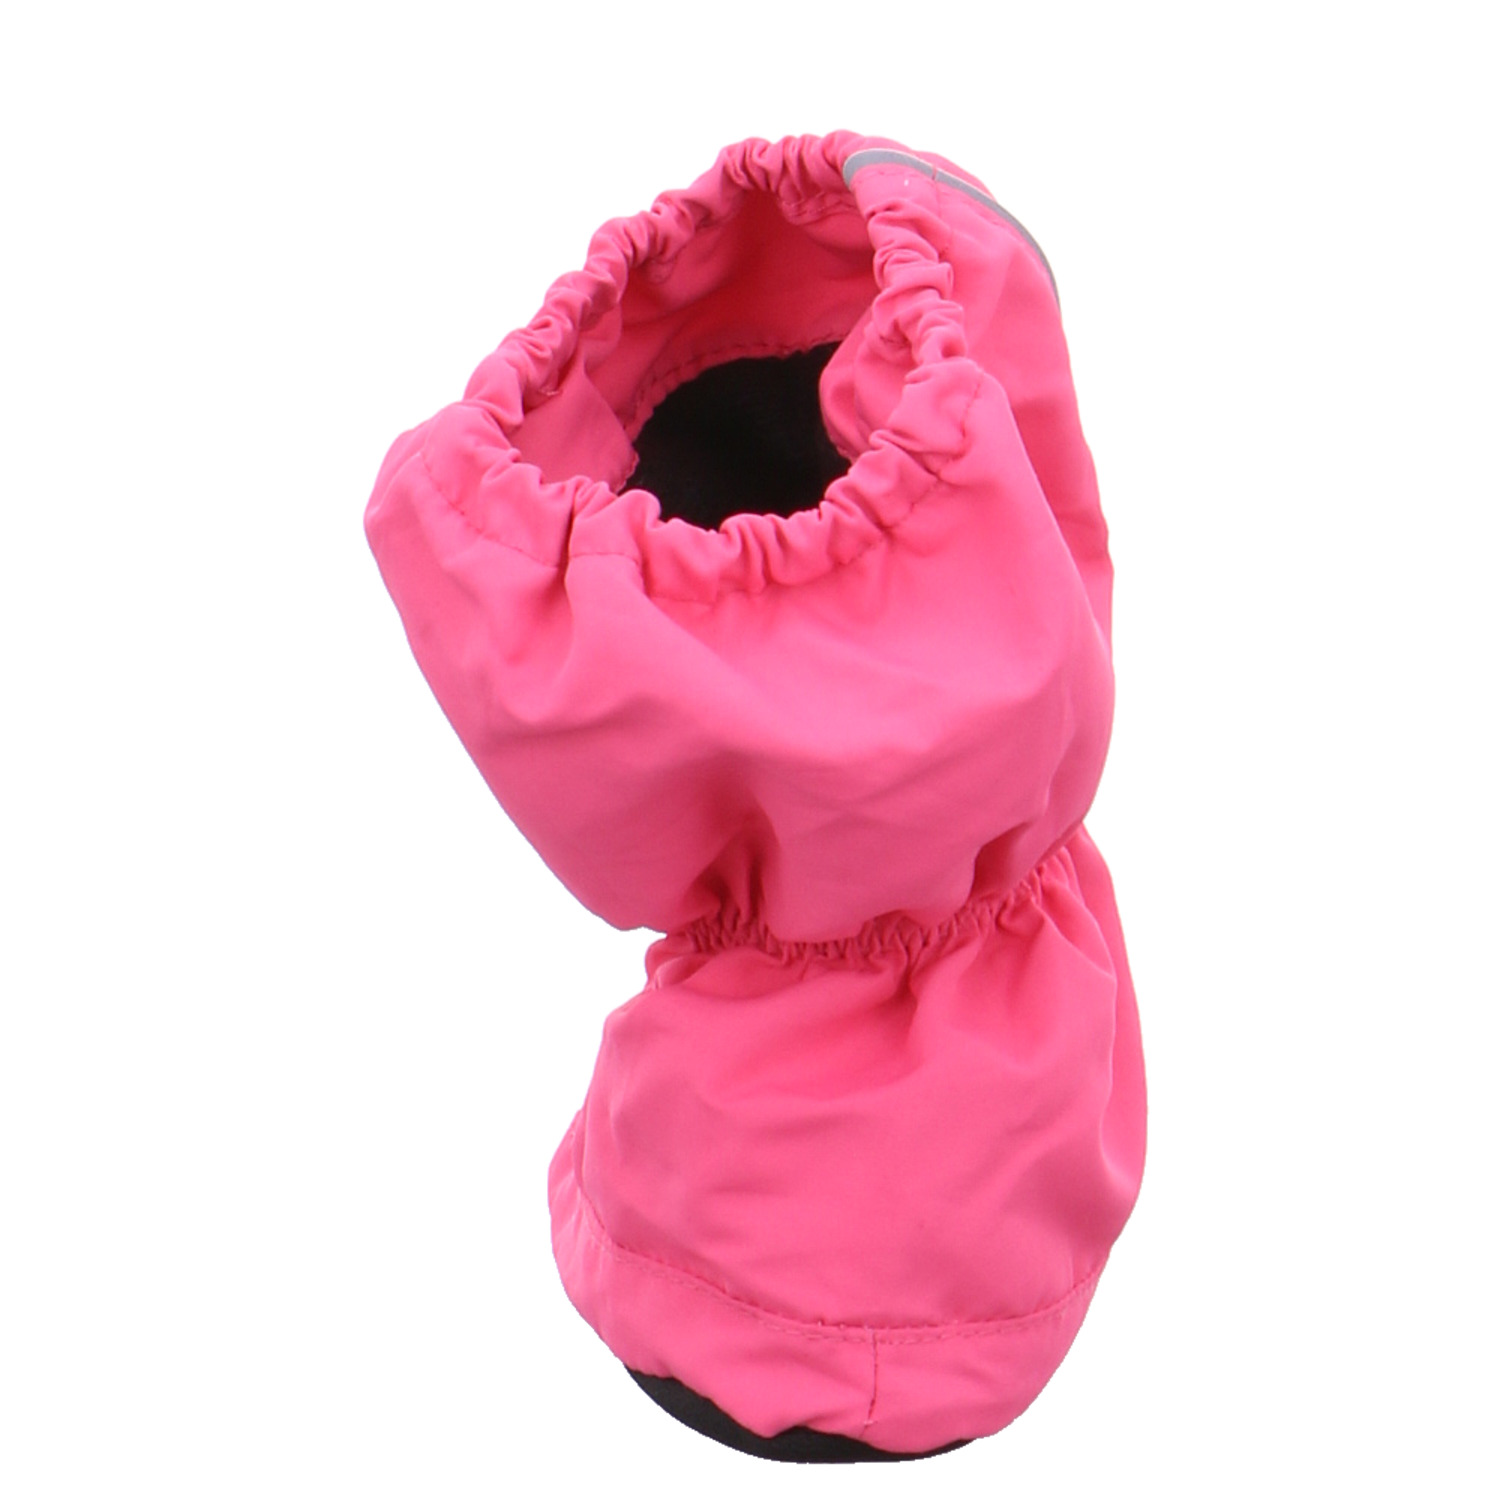 PLAYSHOES Krabbelschuh Pink Textil Thermofüssling YB7556